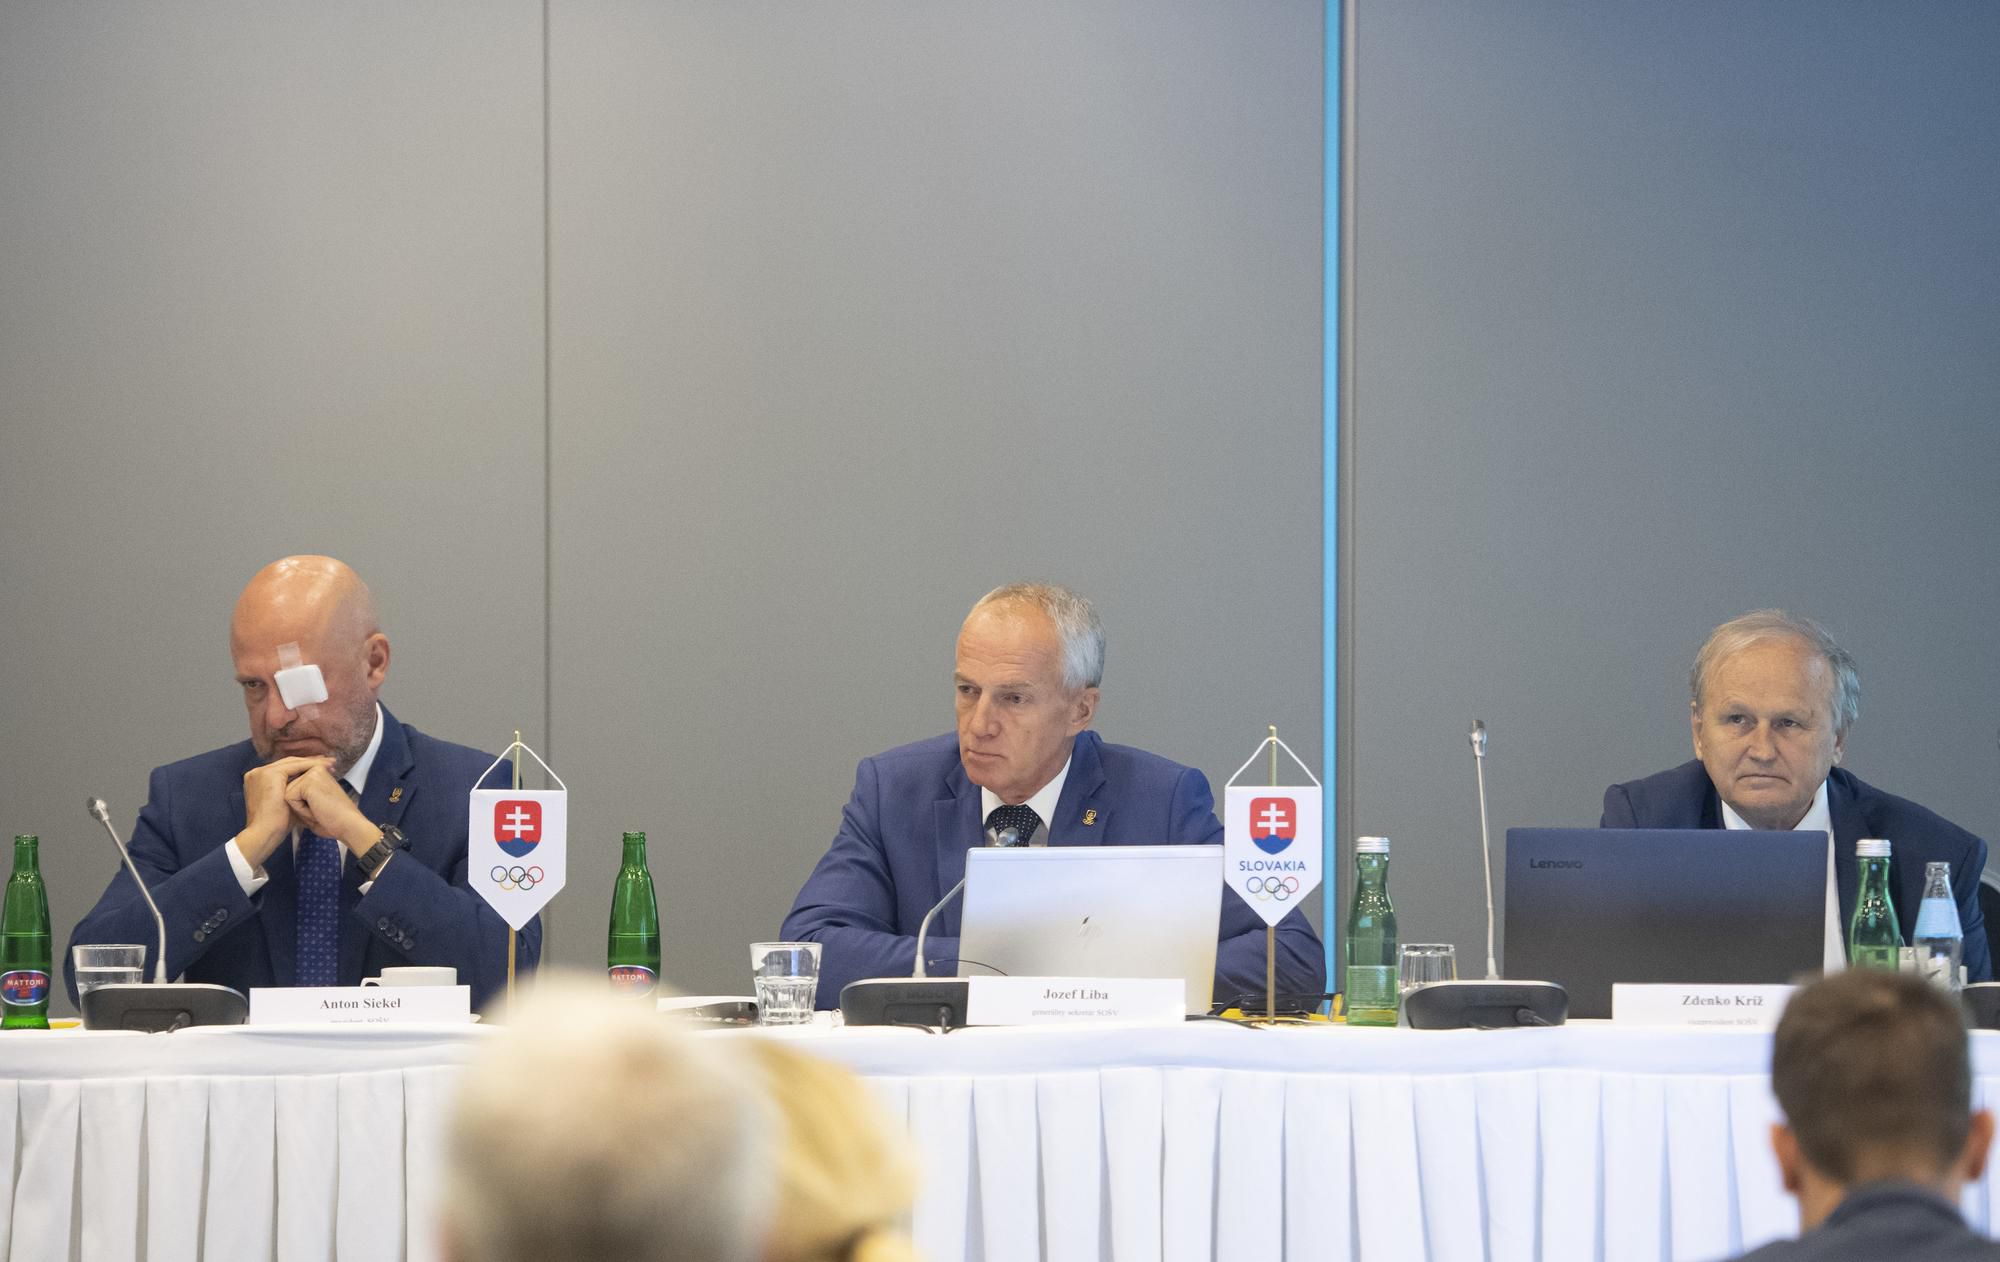 Zľava prezident SOŠV Anton Siekel, generálny sekretár SOŠV Jozef Liba a viceprezident SOŠV pre olympizmus Zdenko Kríž.